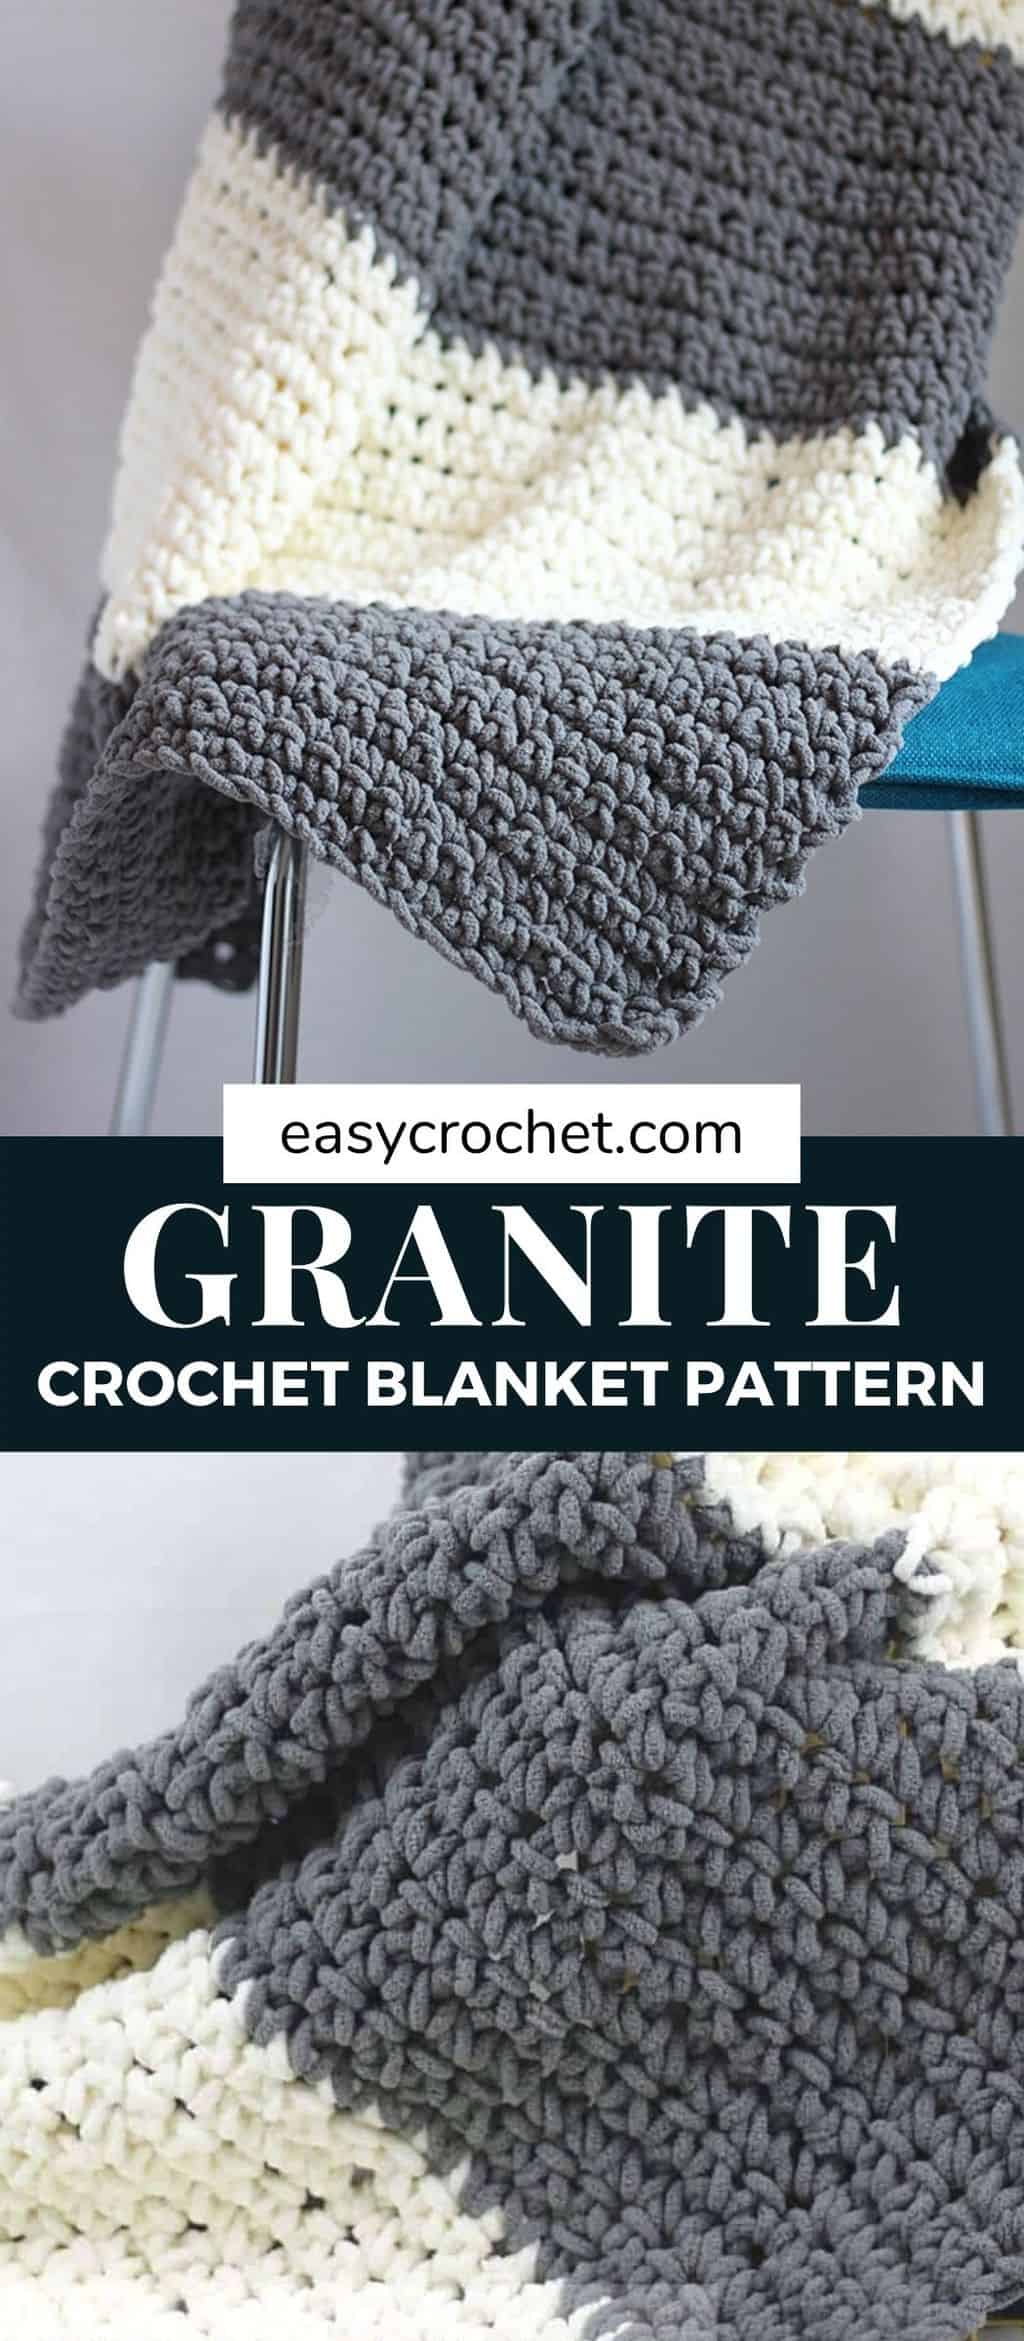 Free Crochet Blanket Pattern by Easy Crochet - Make this beginner-friendly crochet blanket pattern with our FREE crochet pattern! easycrochet.com via @easycrochetcom